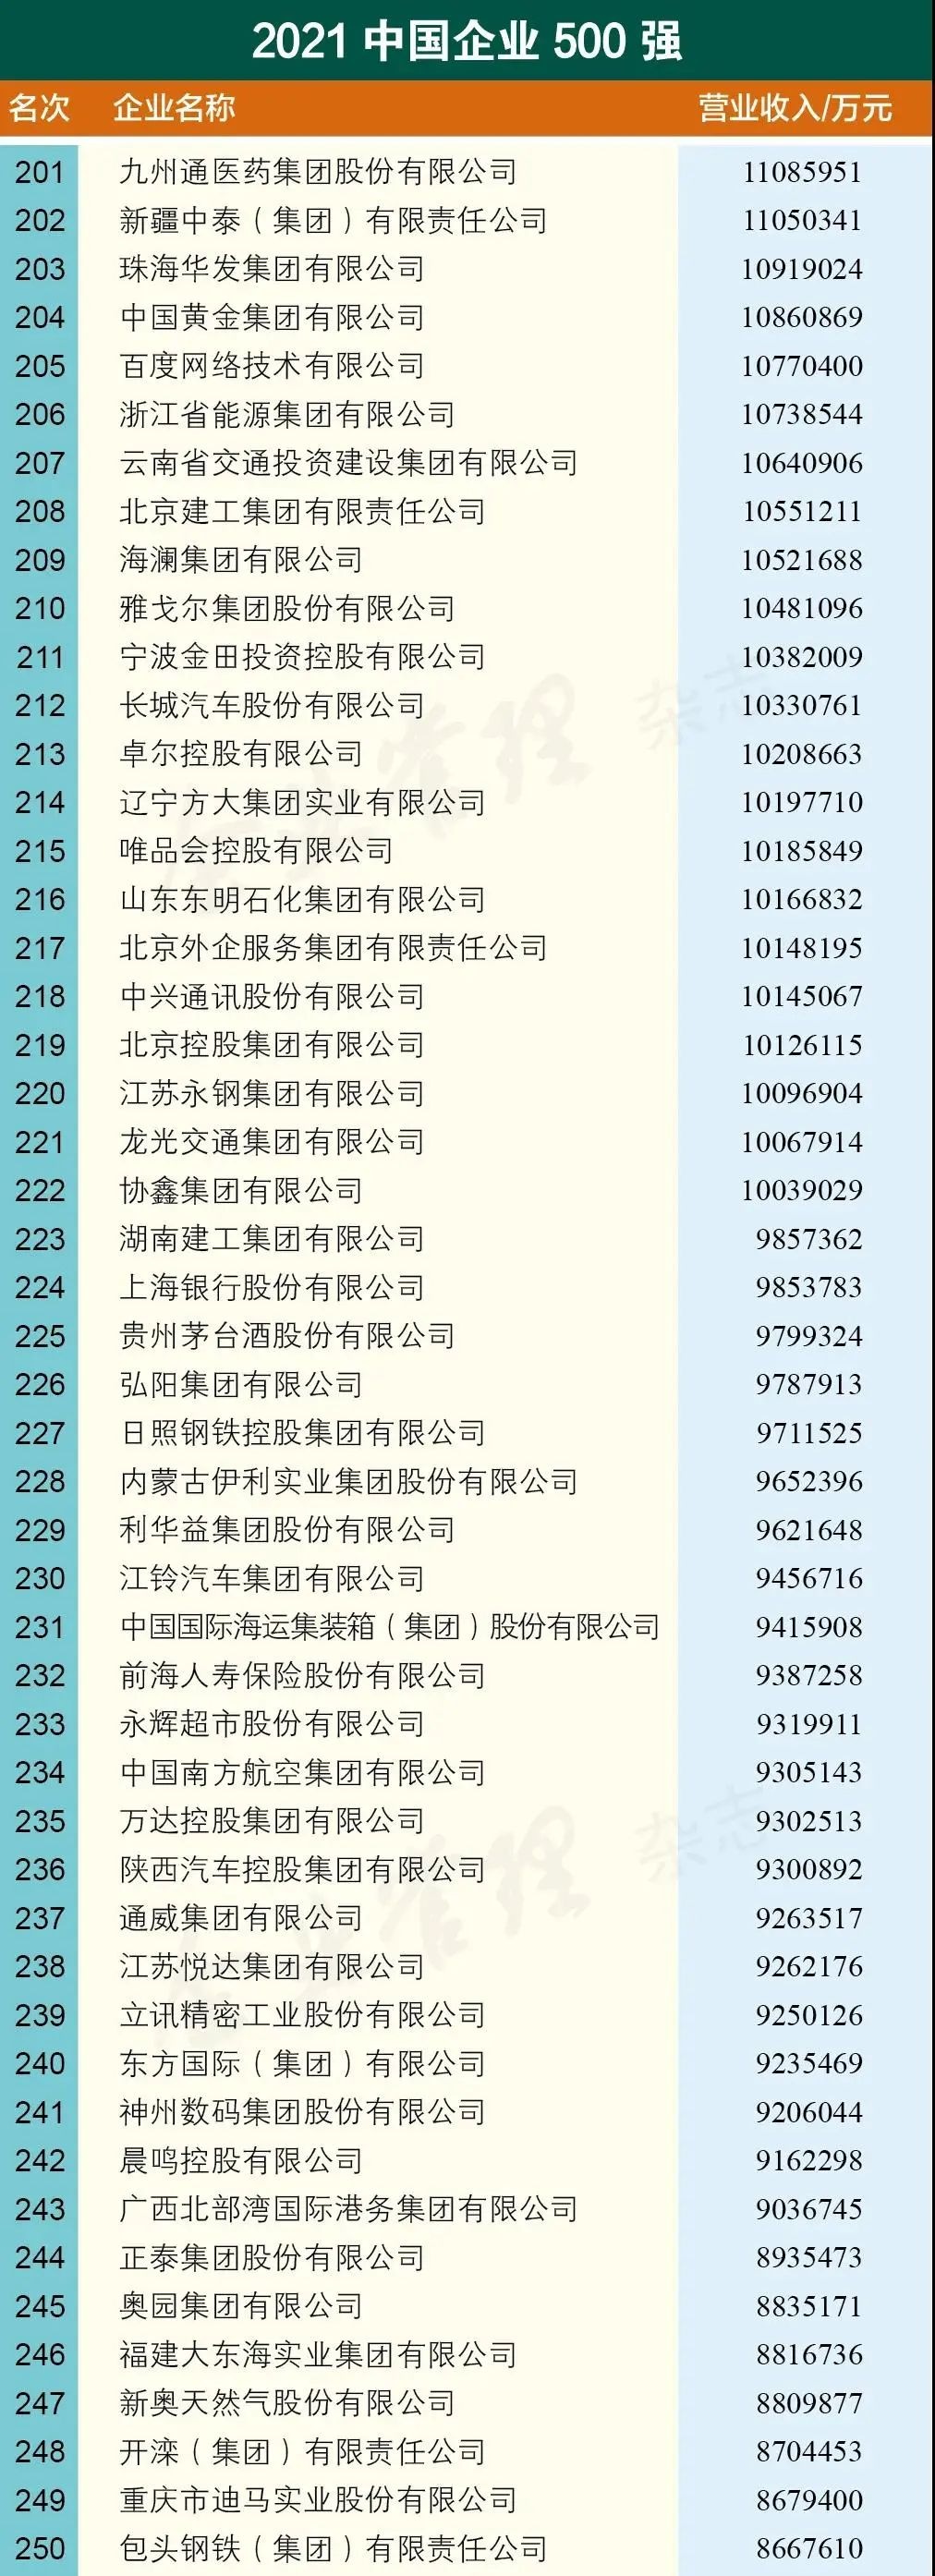 2021中国企业500强名单